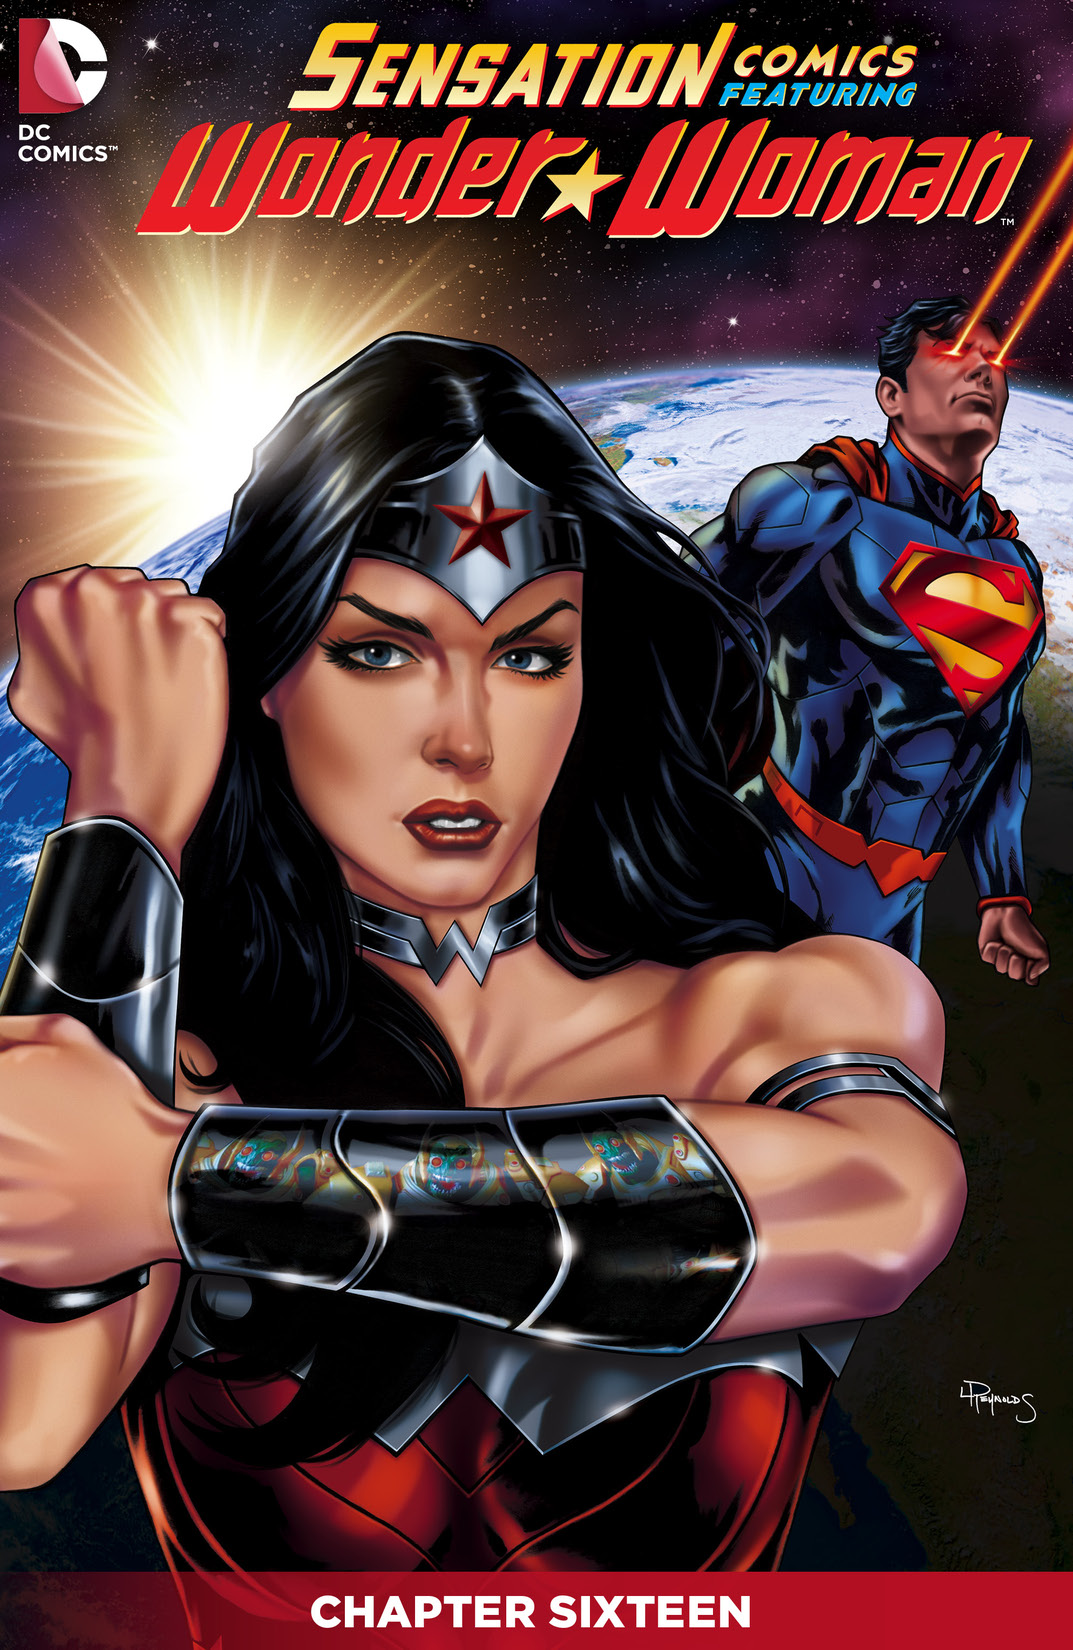 Sensation Comics Featuring Wonder Woman #16 preview images